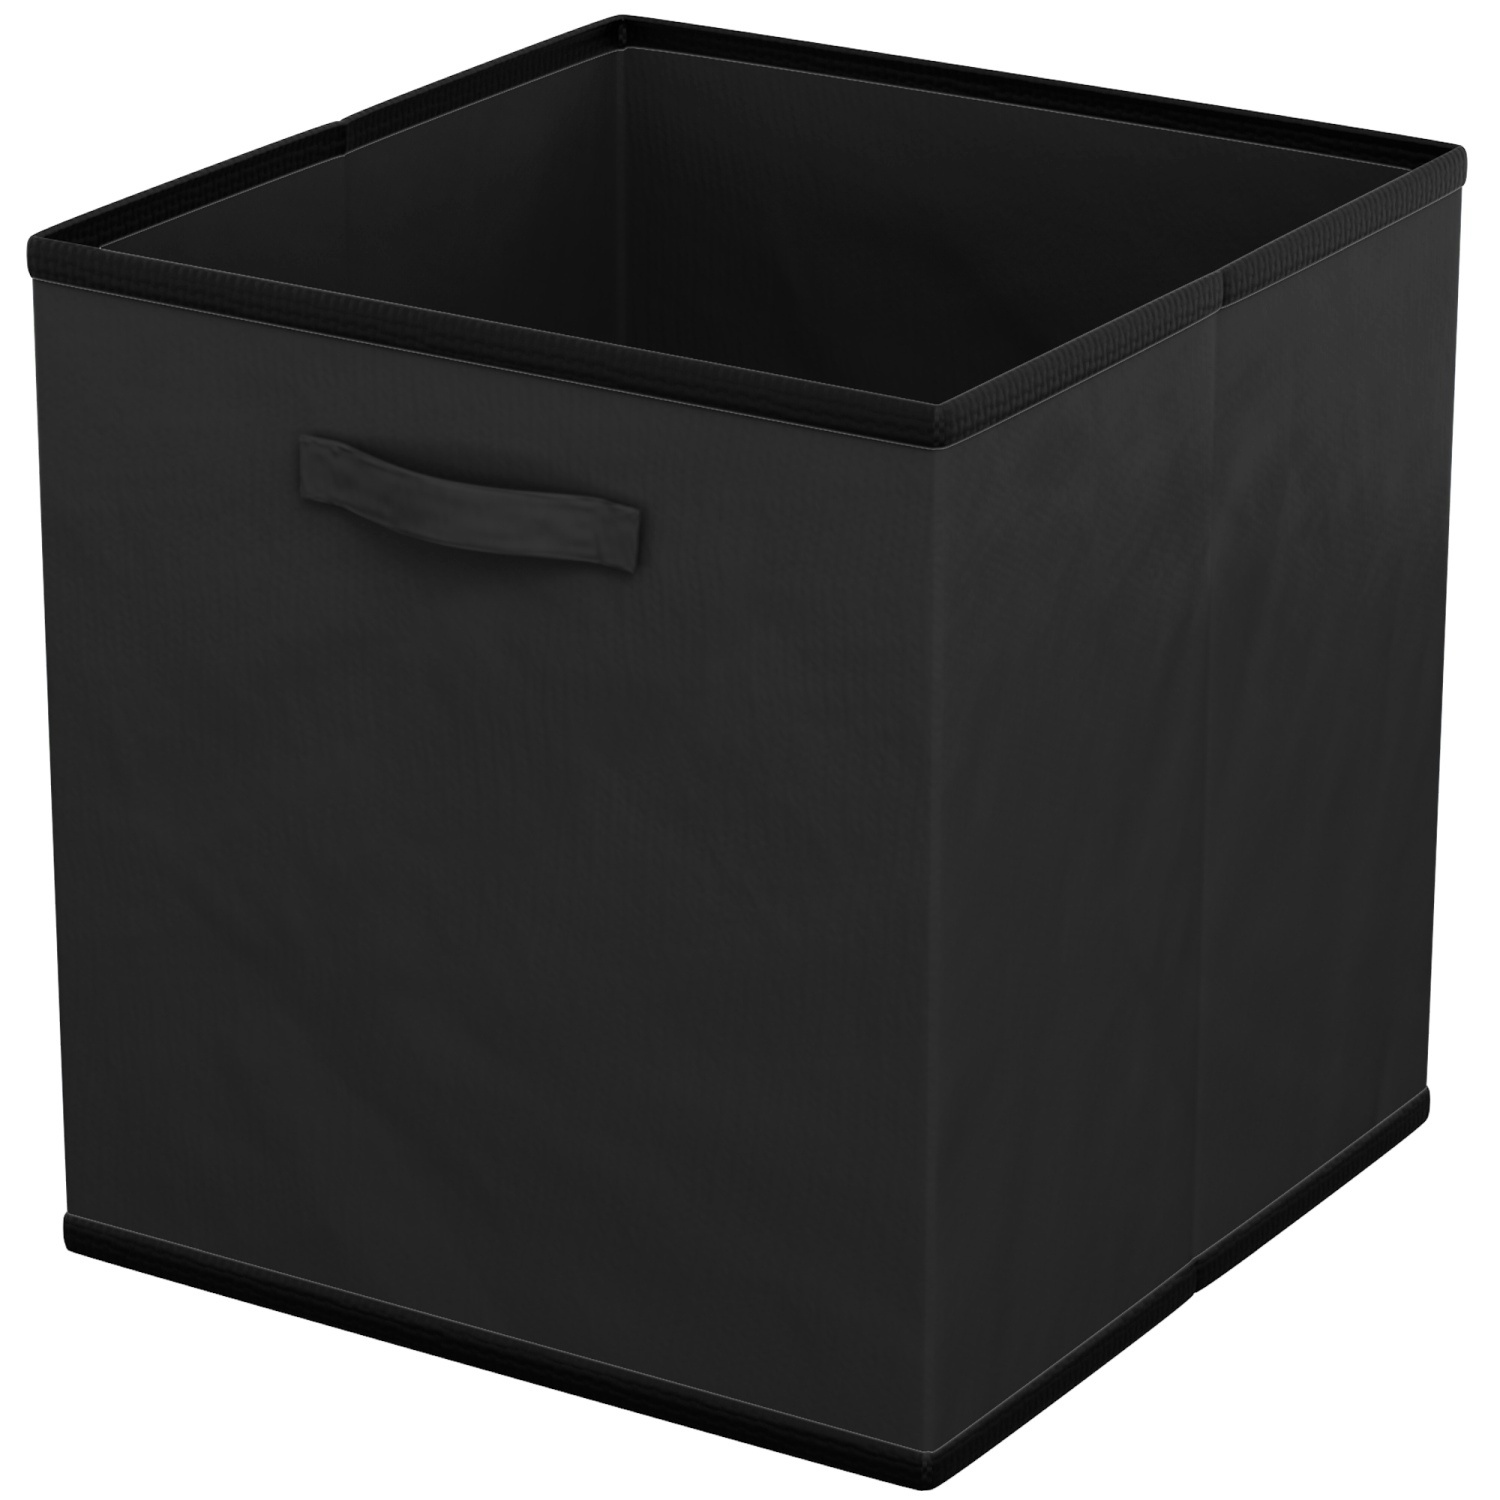 Intirilife 6x faltbare Aufbewahrungs-Stoffbox in Schwarz - 26.7 x 26.7 x 28 cm - Multifunktionale Sammelbox zum Kombinieren mit Schränken oder Regalen